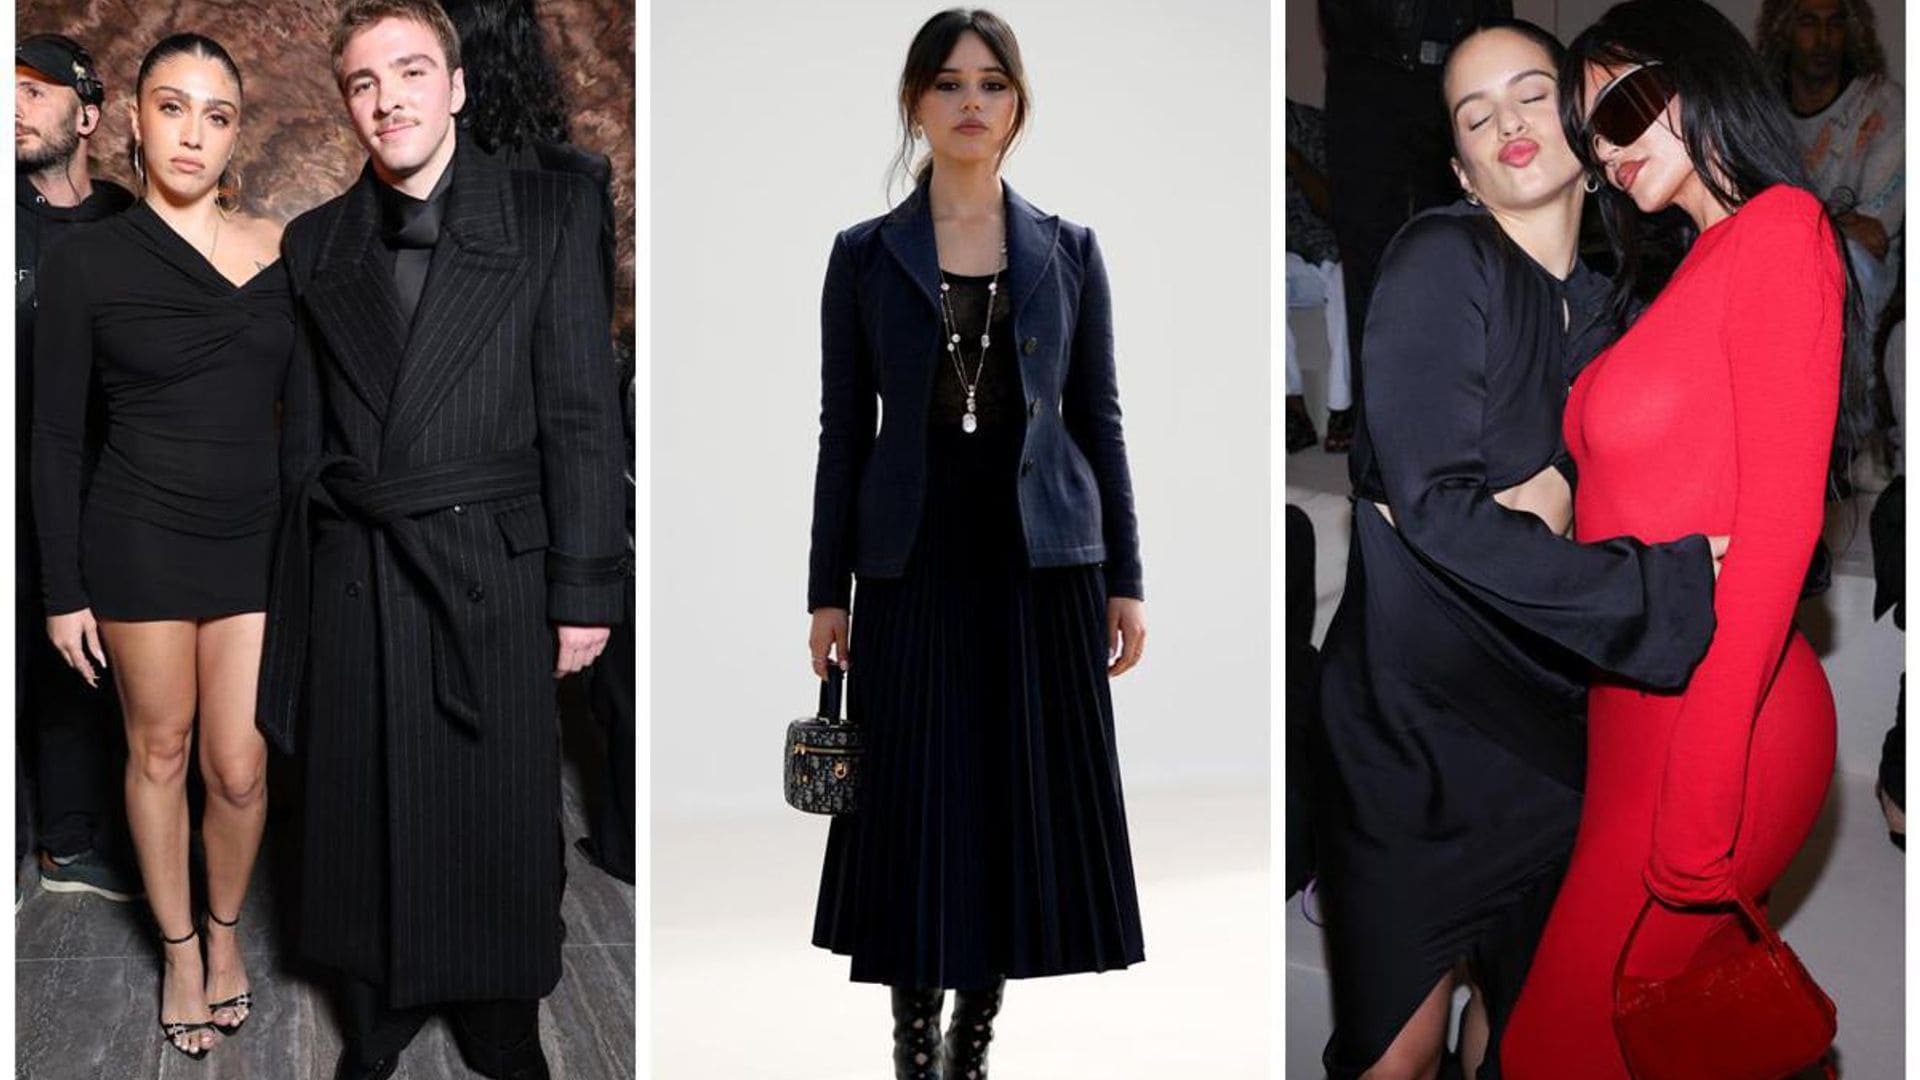 Lourdes Leon, Jenna Ortega, Rosalia and more celebs stun at Paris Fashion Week﻿